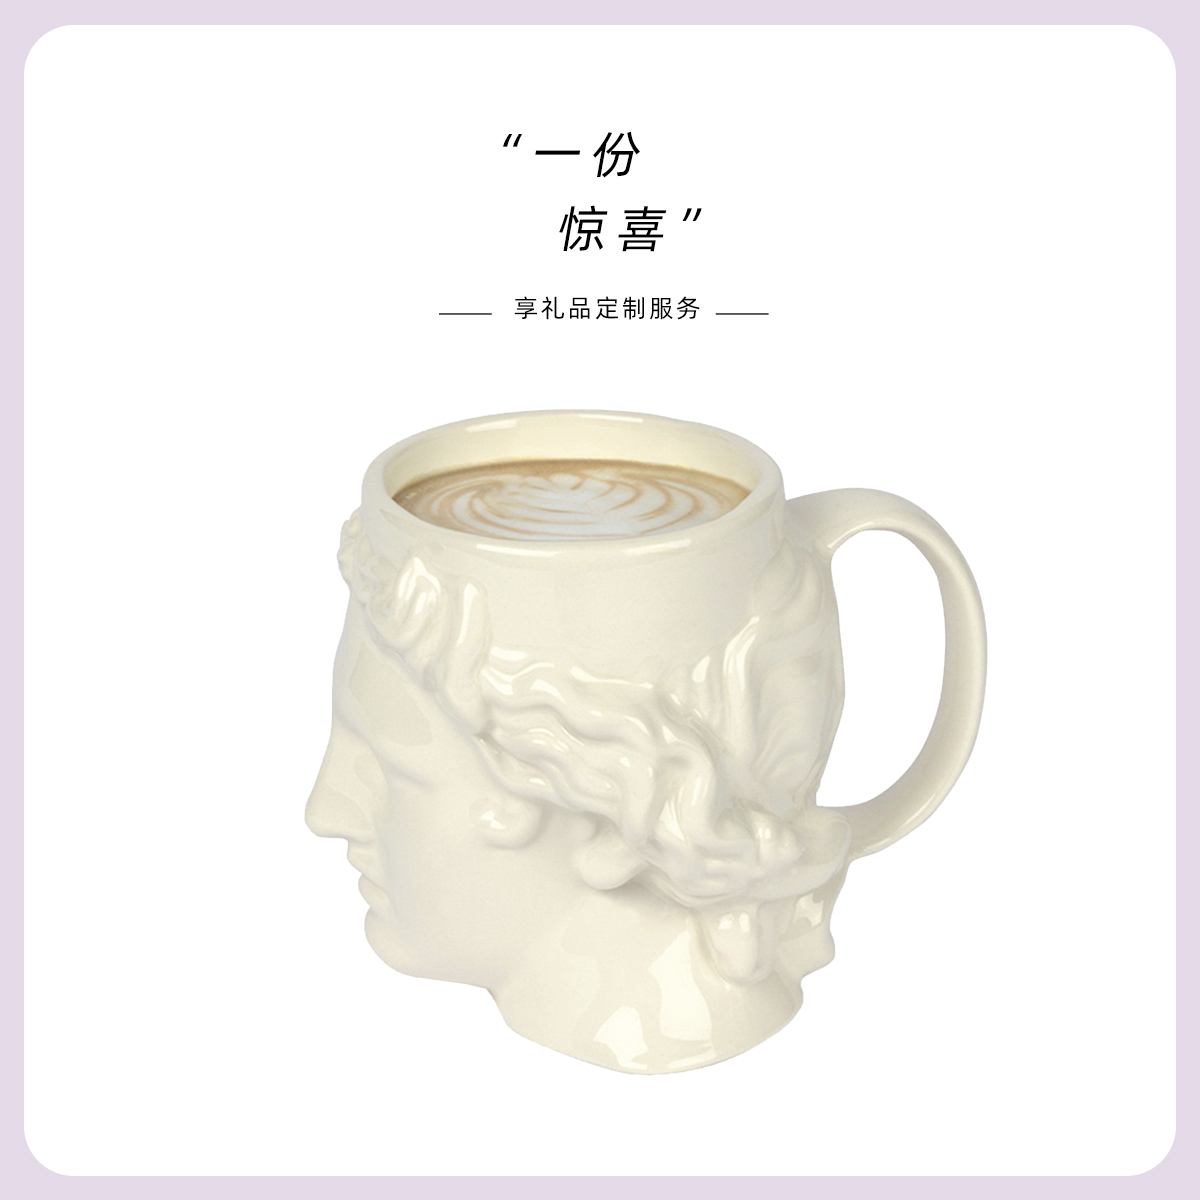 愿一】西班牙DOIY陶瓷阿波罗马克杯 大卫雕塑艺术咖啡杯 男友礼物